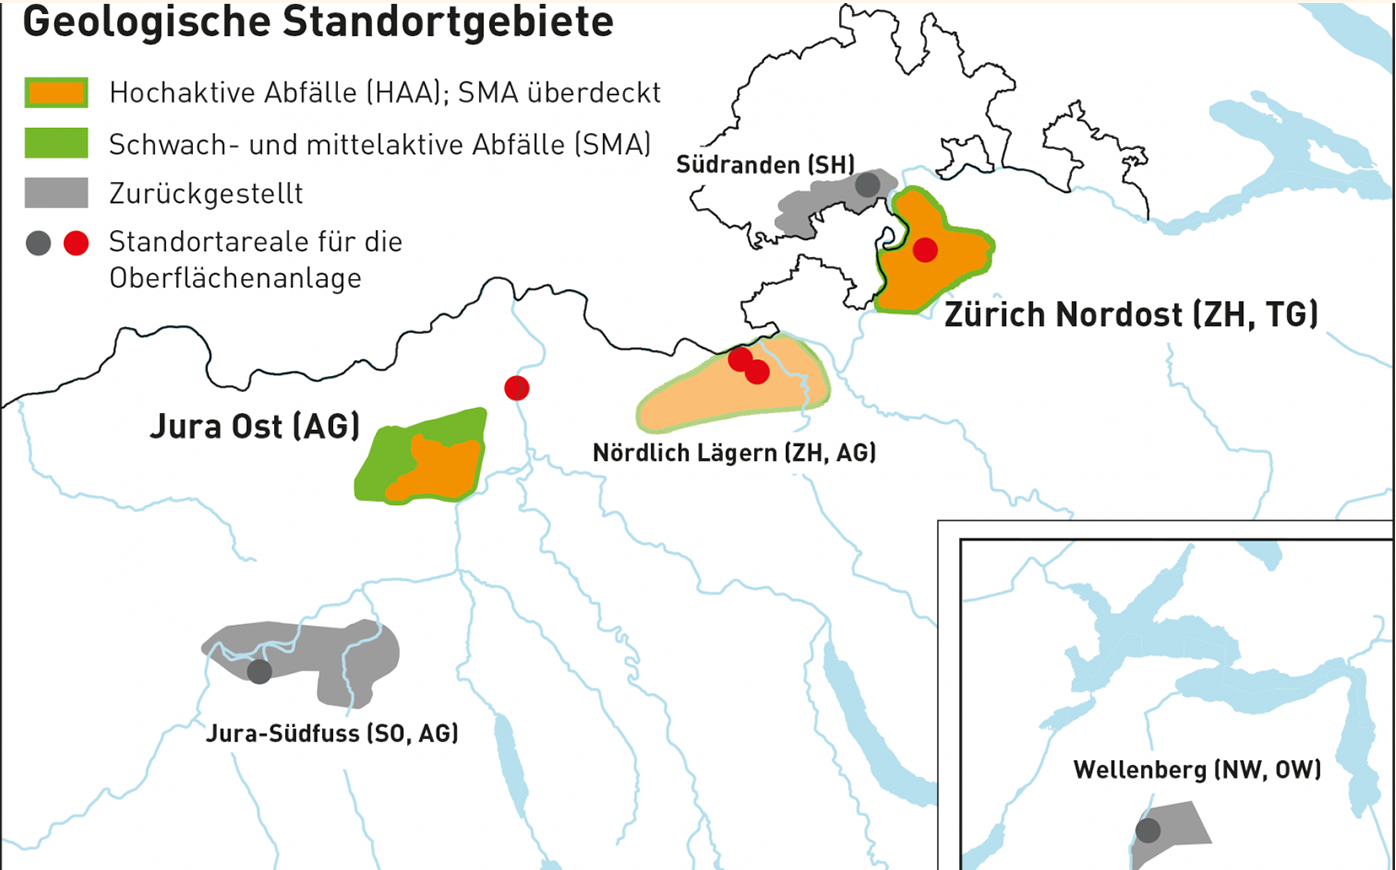 Alle drei möglichen Standorte bleiben im Rennen: Jura Ost im Kanton Aargau, Nördlich Lägern im den Kantonen Aargau und Zürich sowie Zürich Nordost in den Kantonen Thurgau und Zürich.